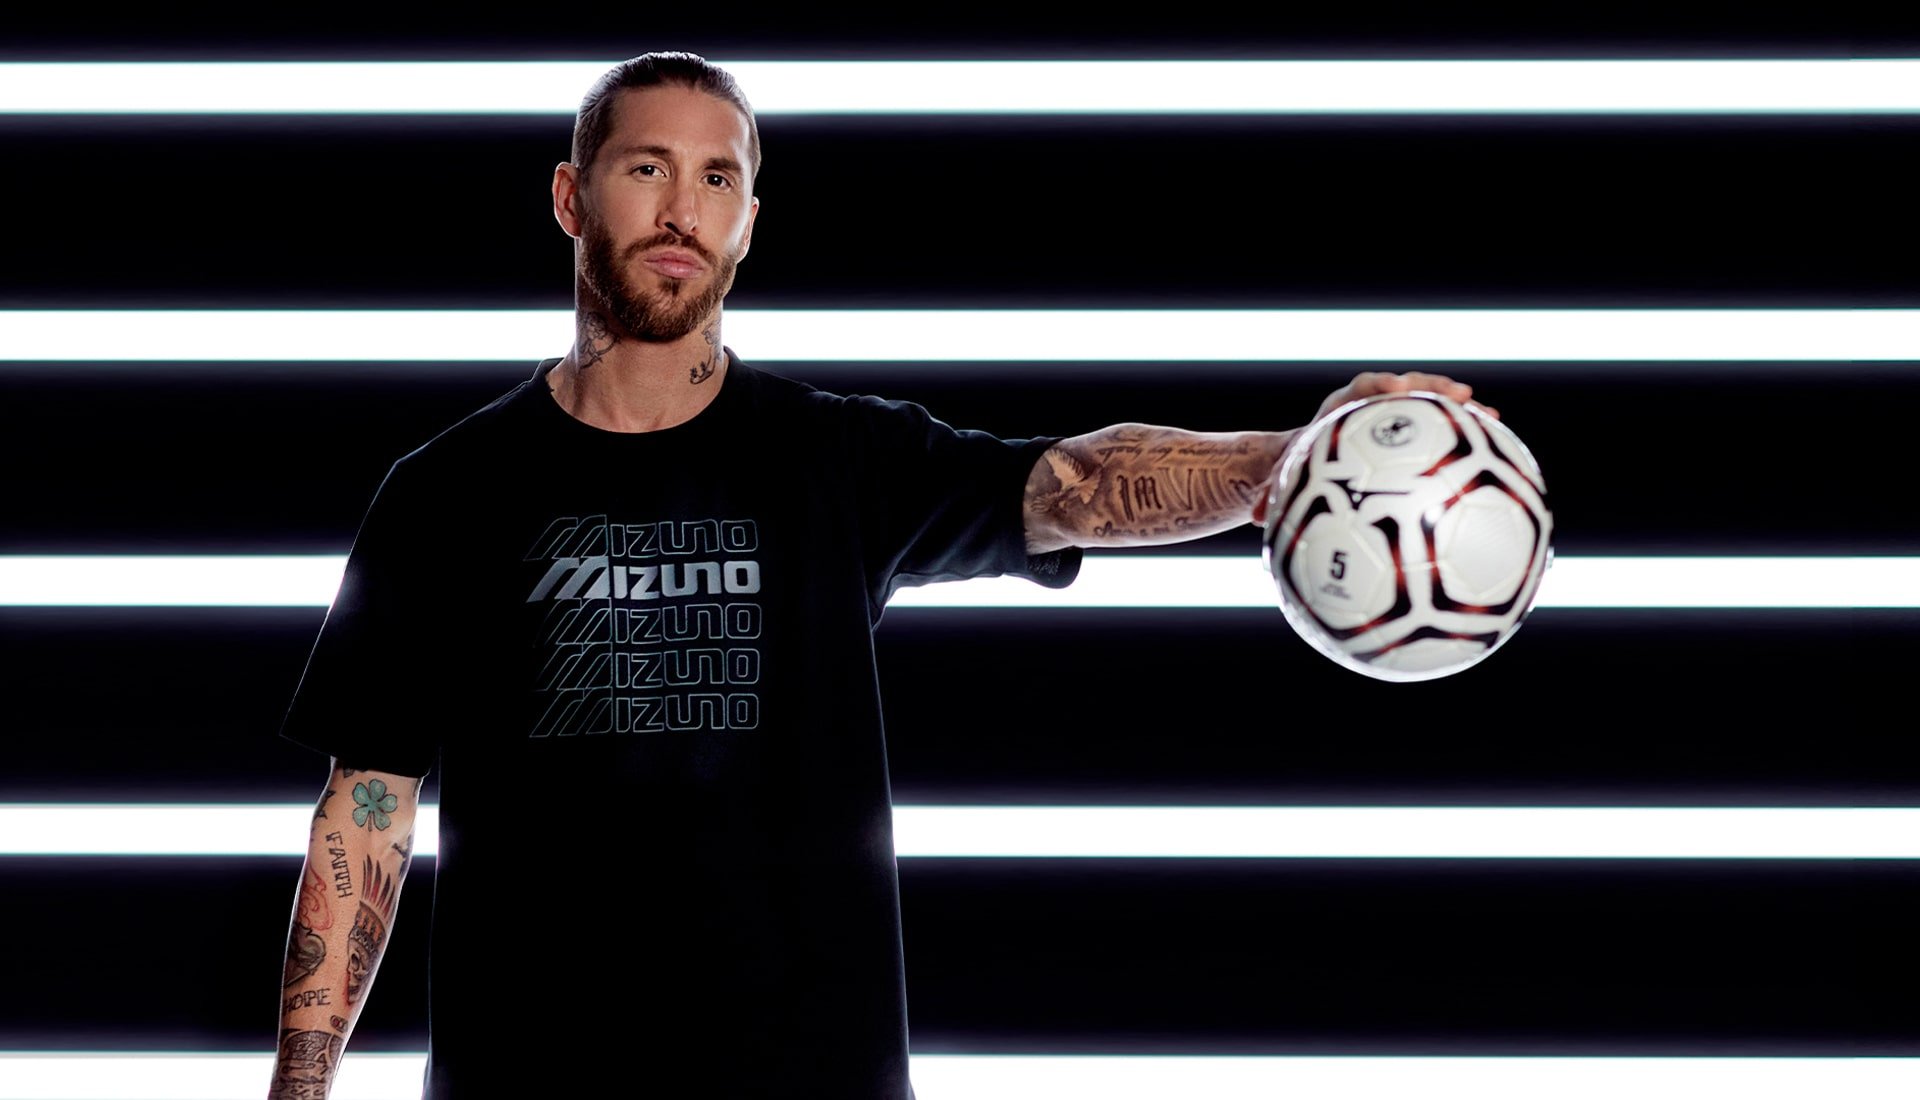 OFFICIEL : Sergio Ramos quitte Nike et signe pour une marque Japonaise